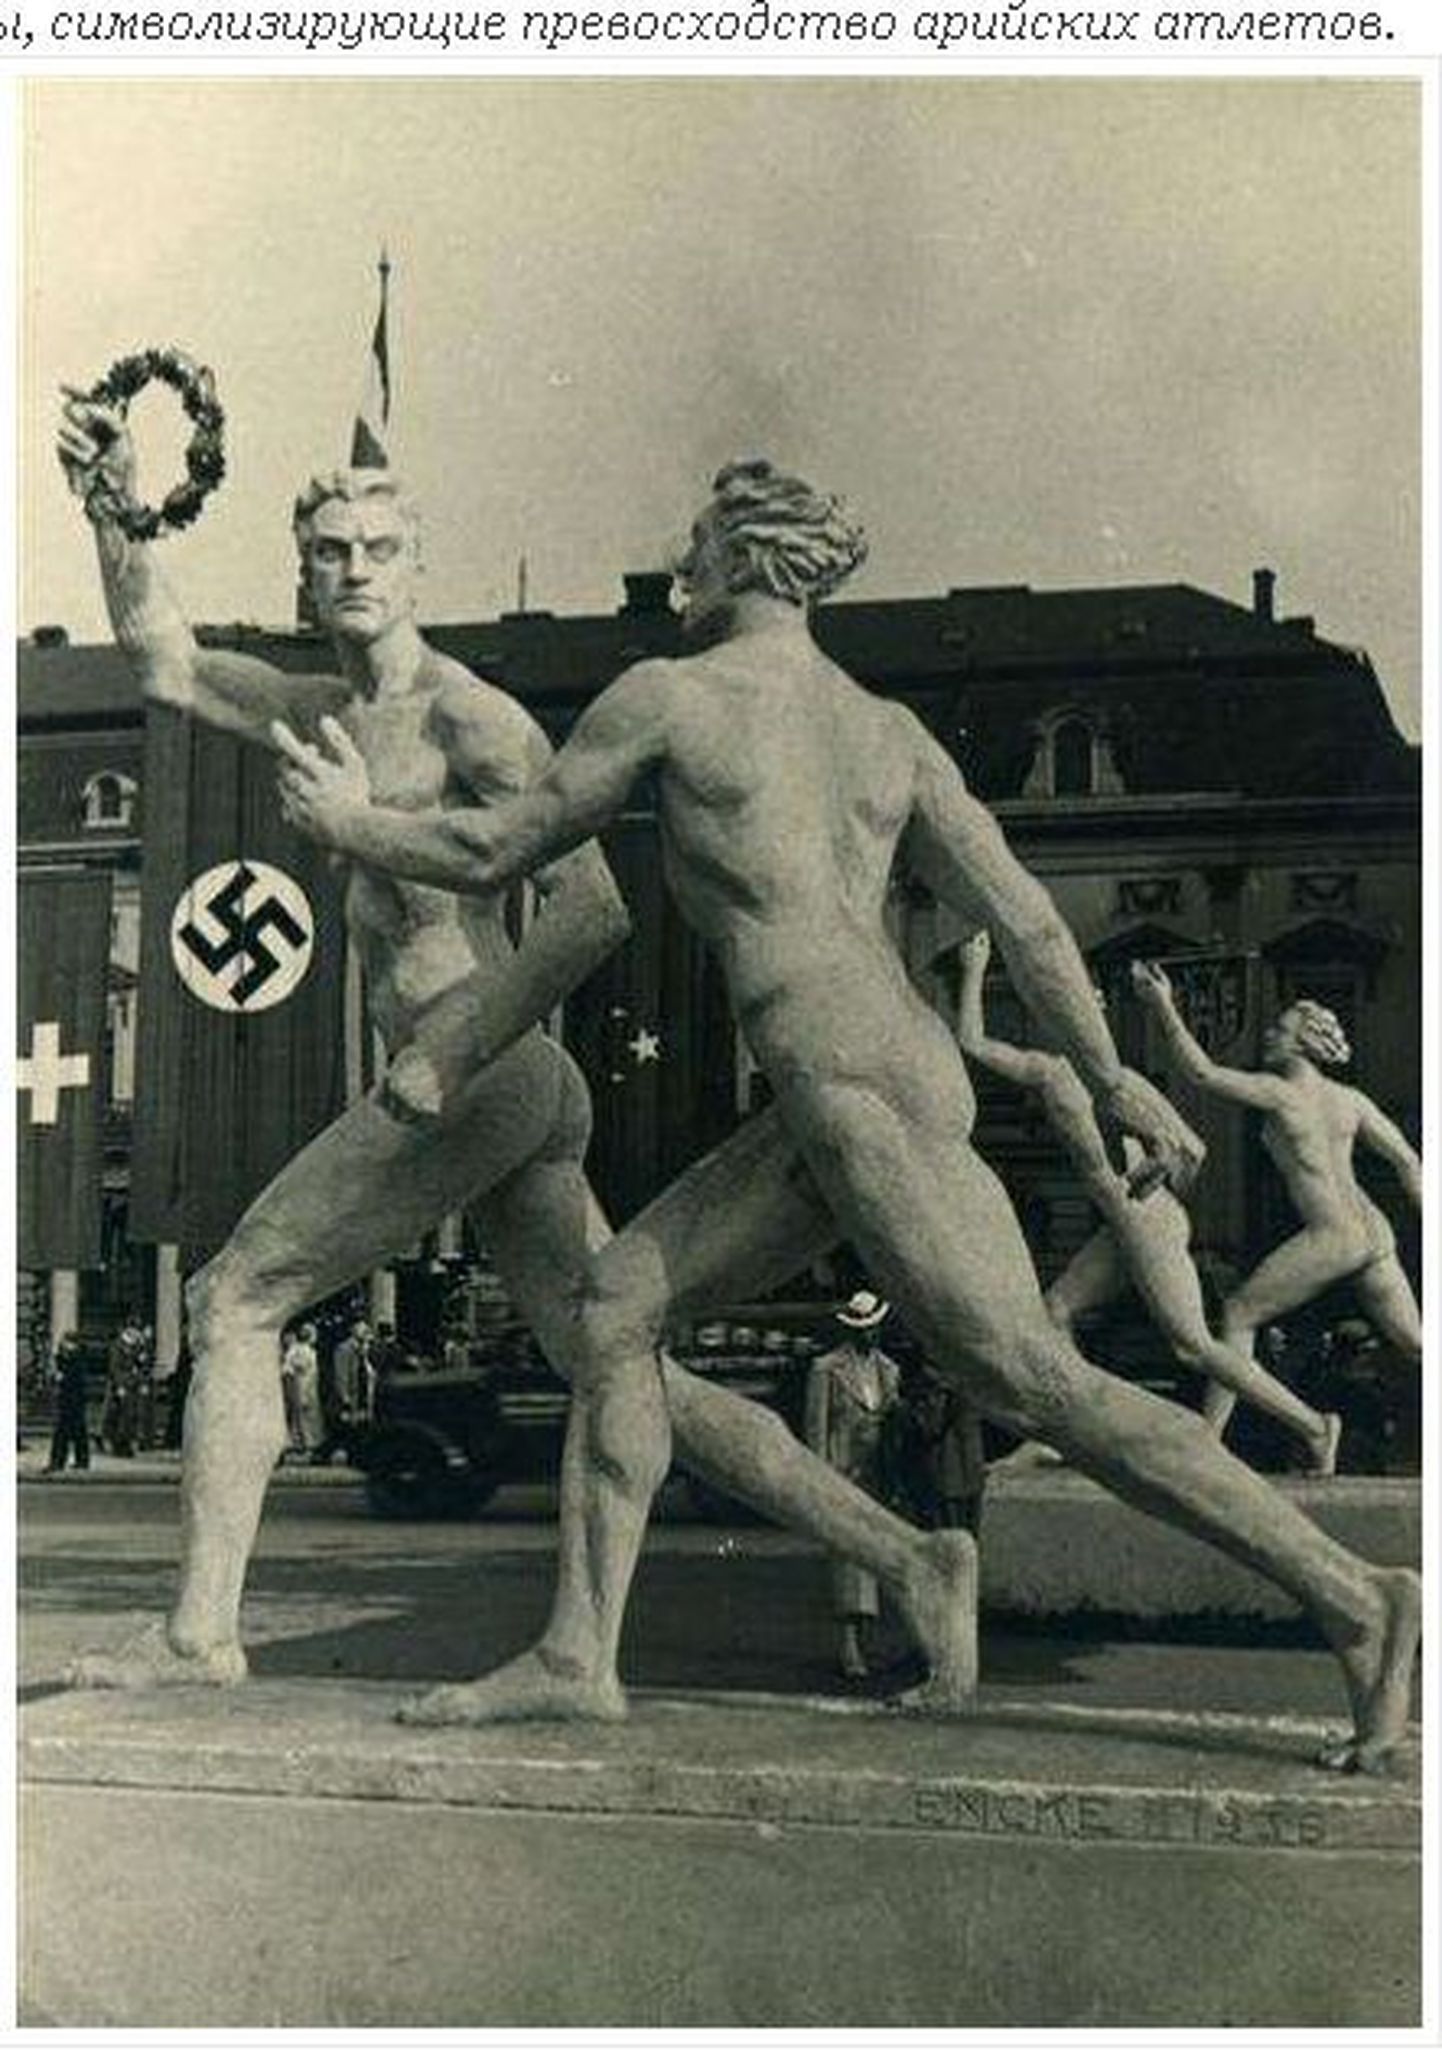 Нацистские скульптуры, символизирующие превосходство арийских атлетов (Берлин, 1936).